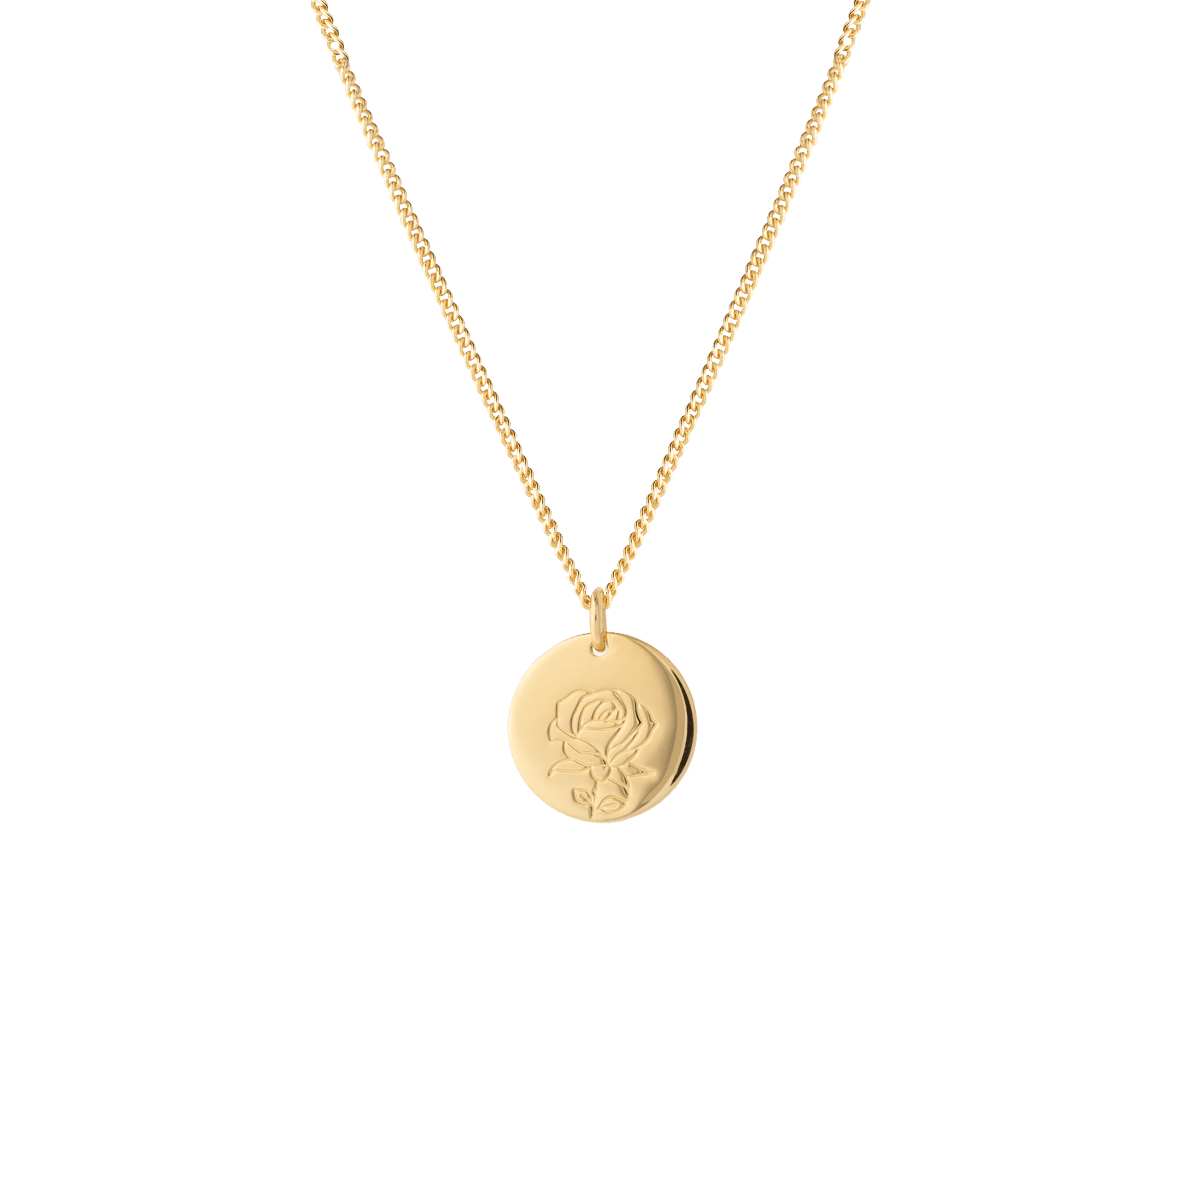 birthflower necklace gold rose